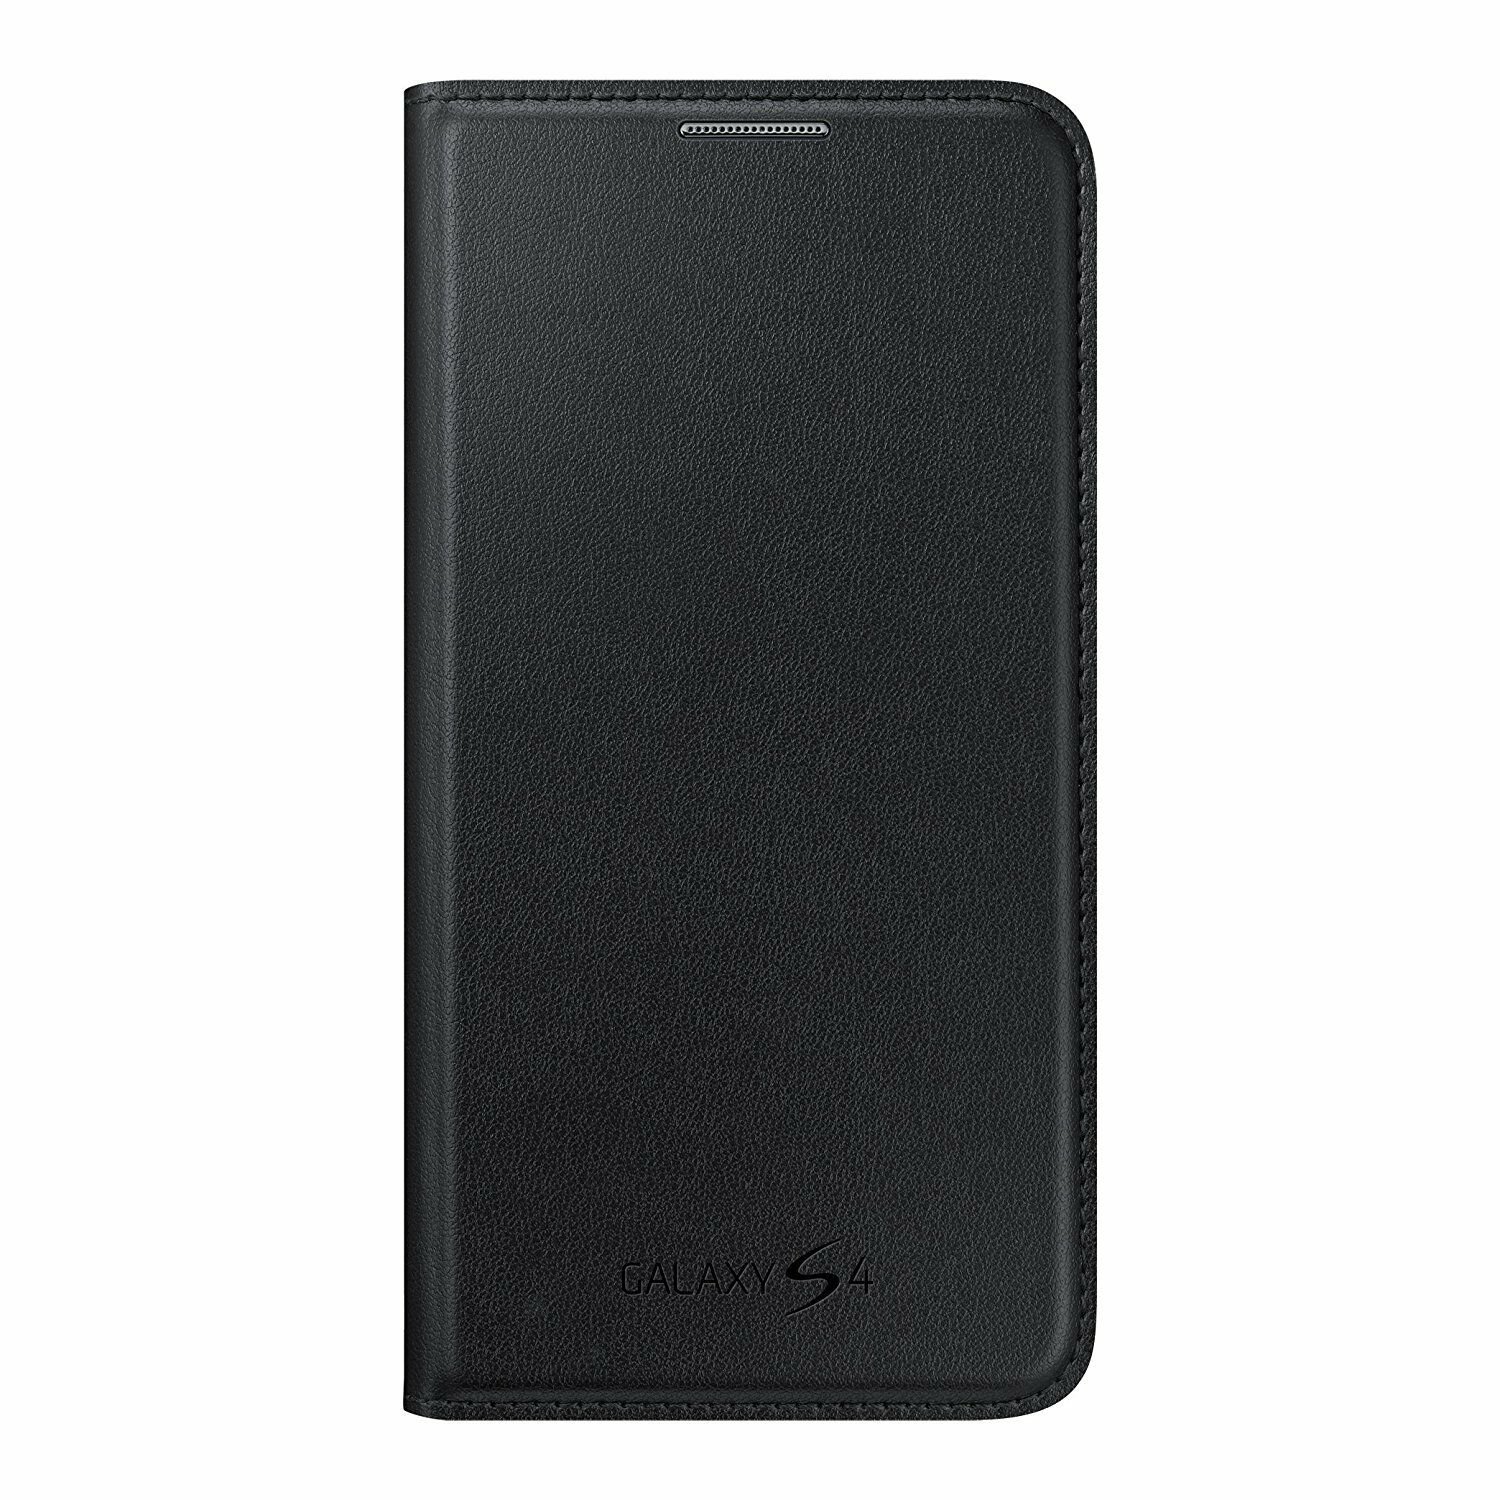 Samsung Galaxy S4 Wallet Cover Folio Case Black